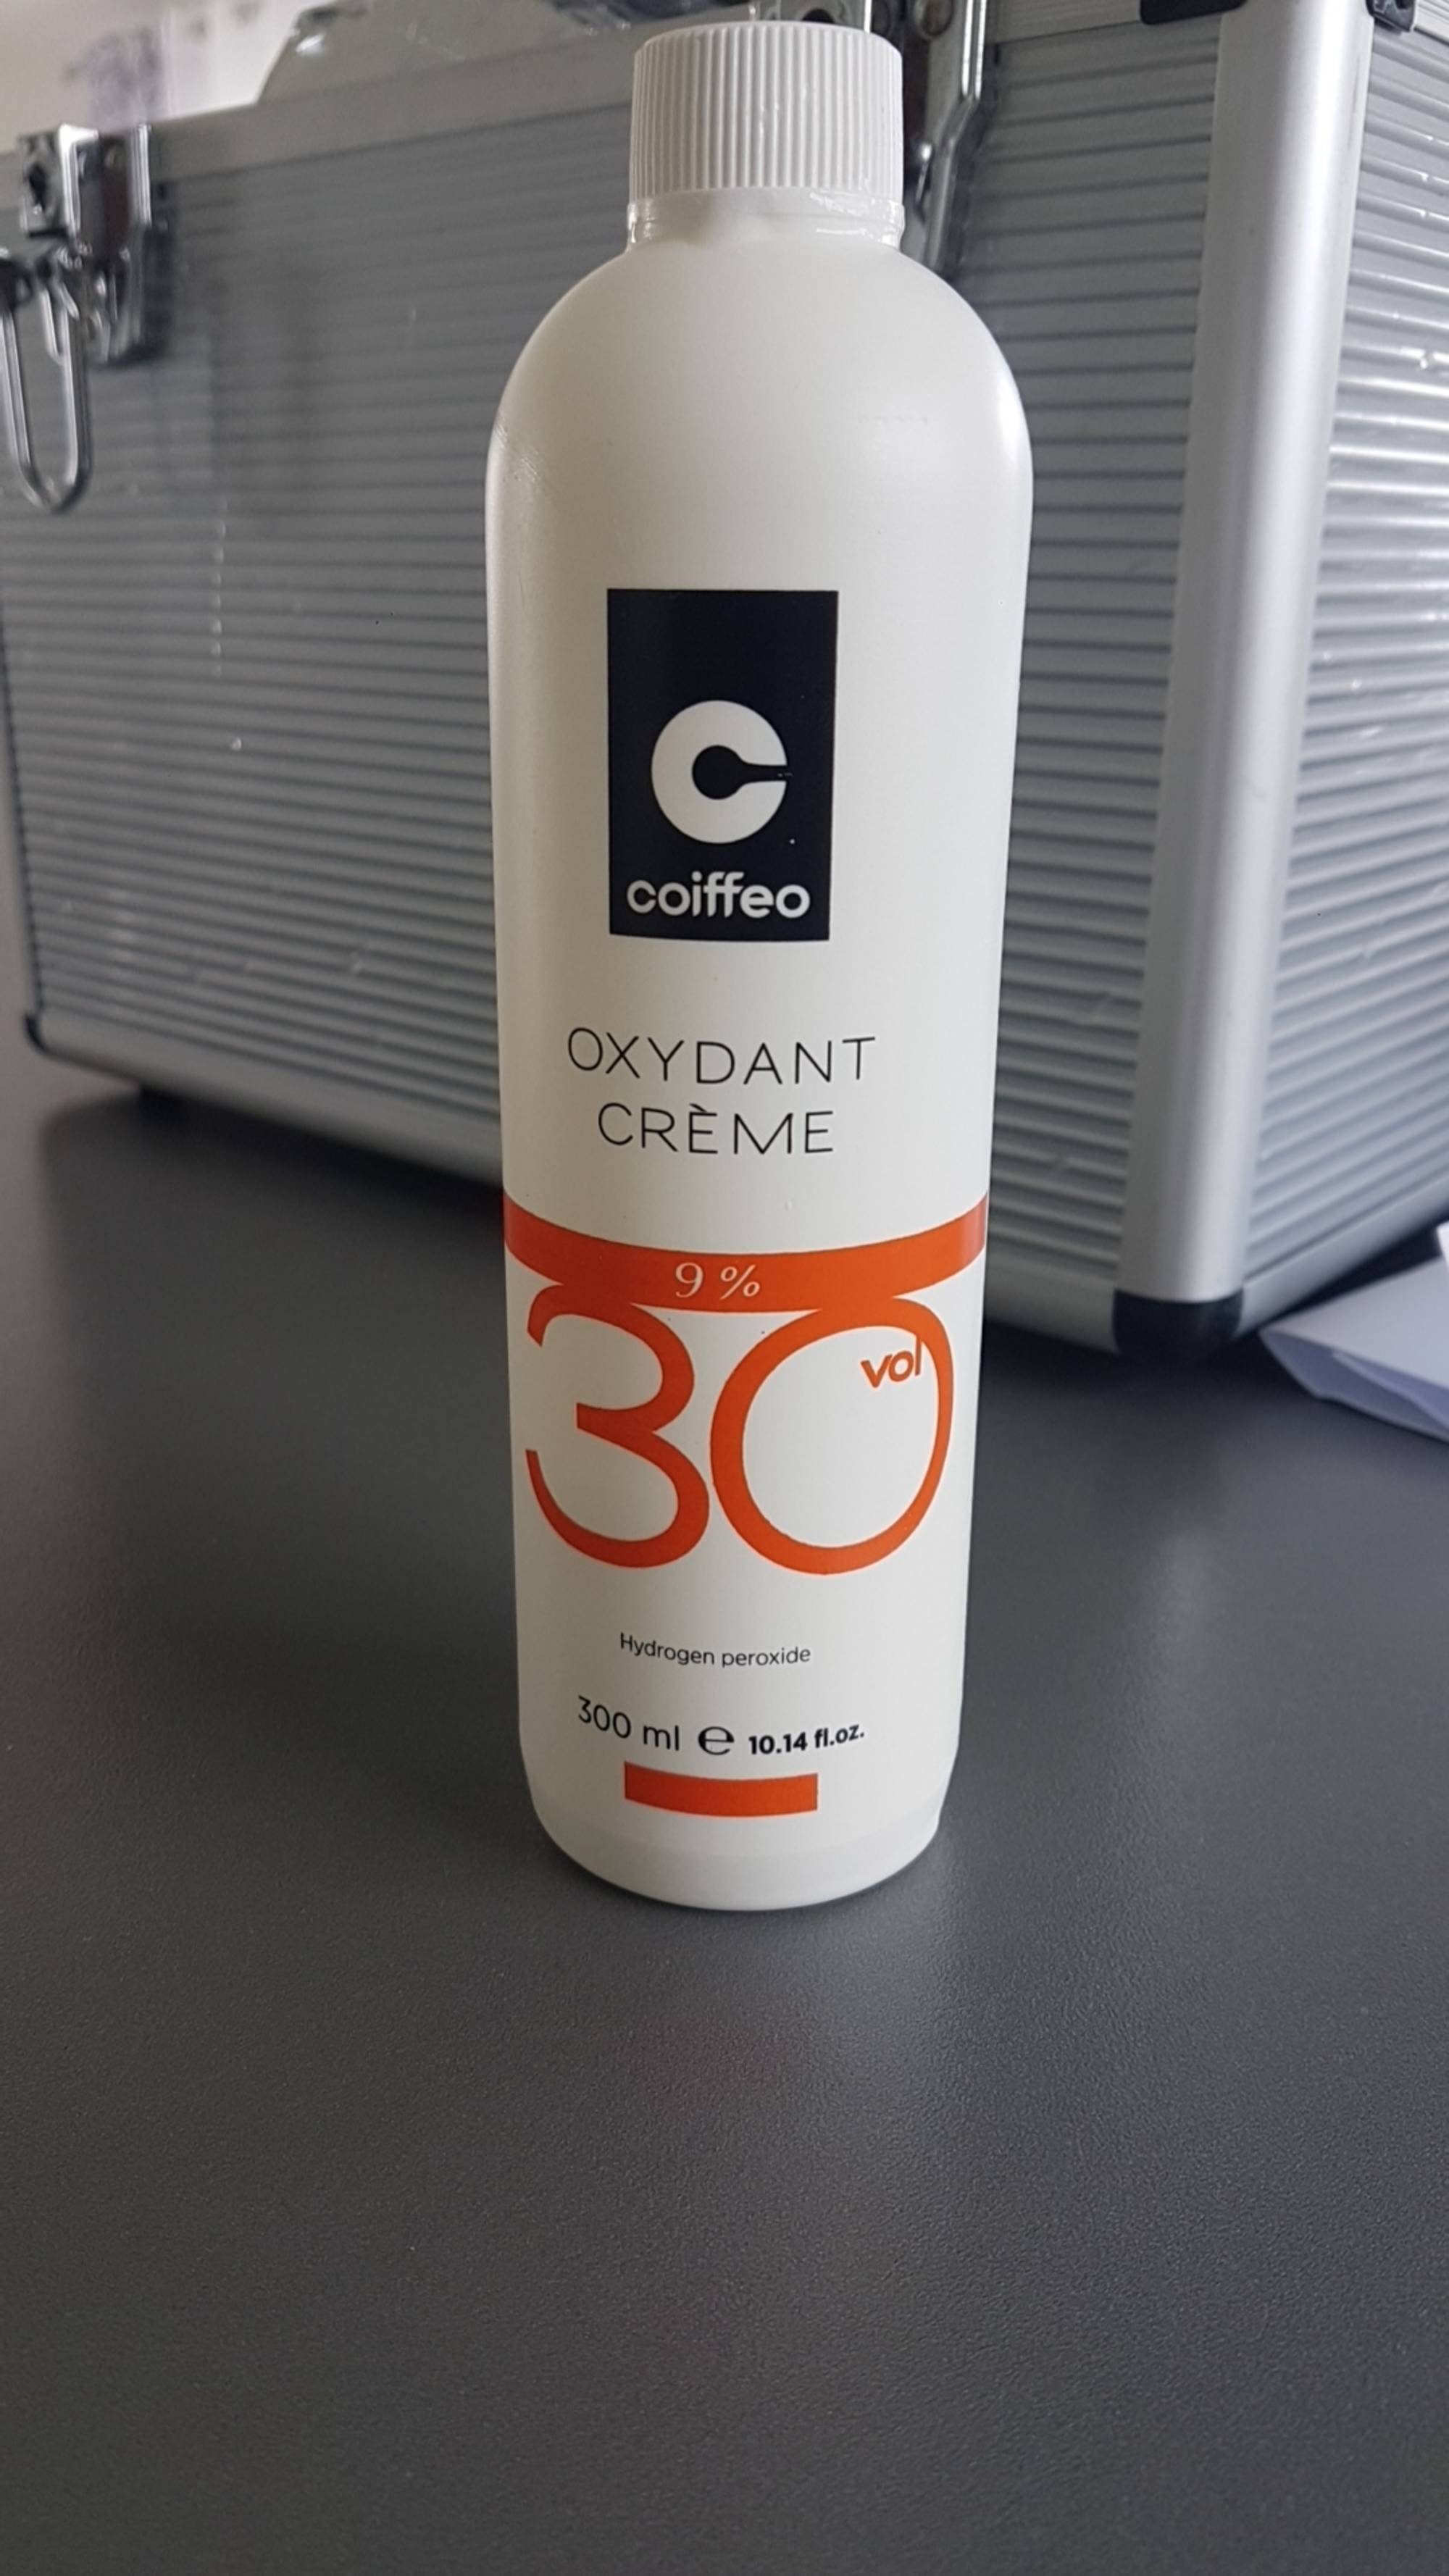 COIFFEO - Oxydant crème 9%